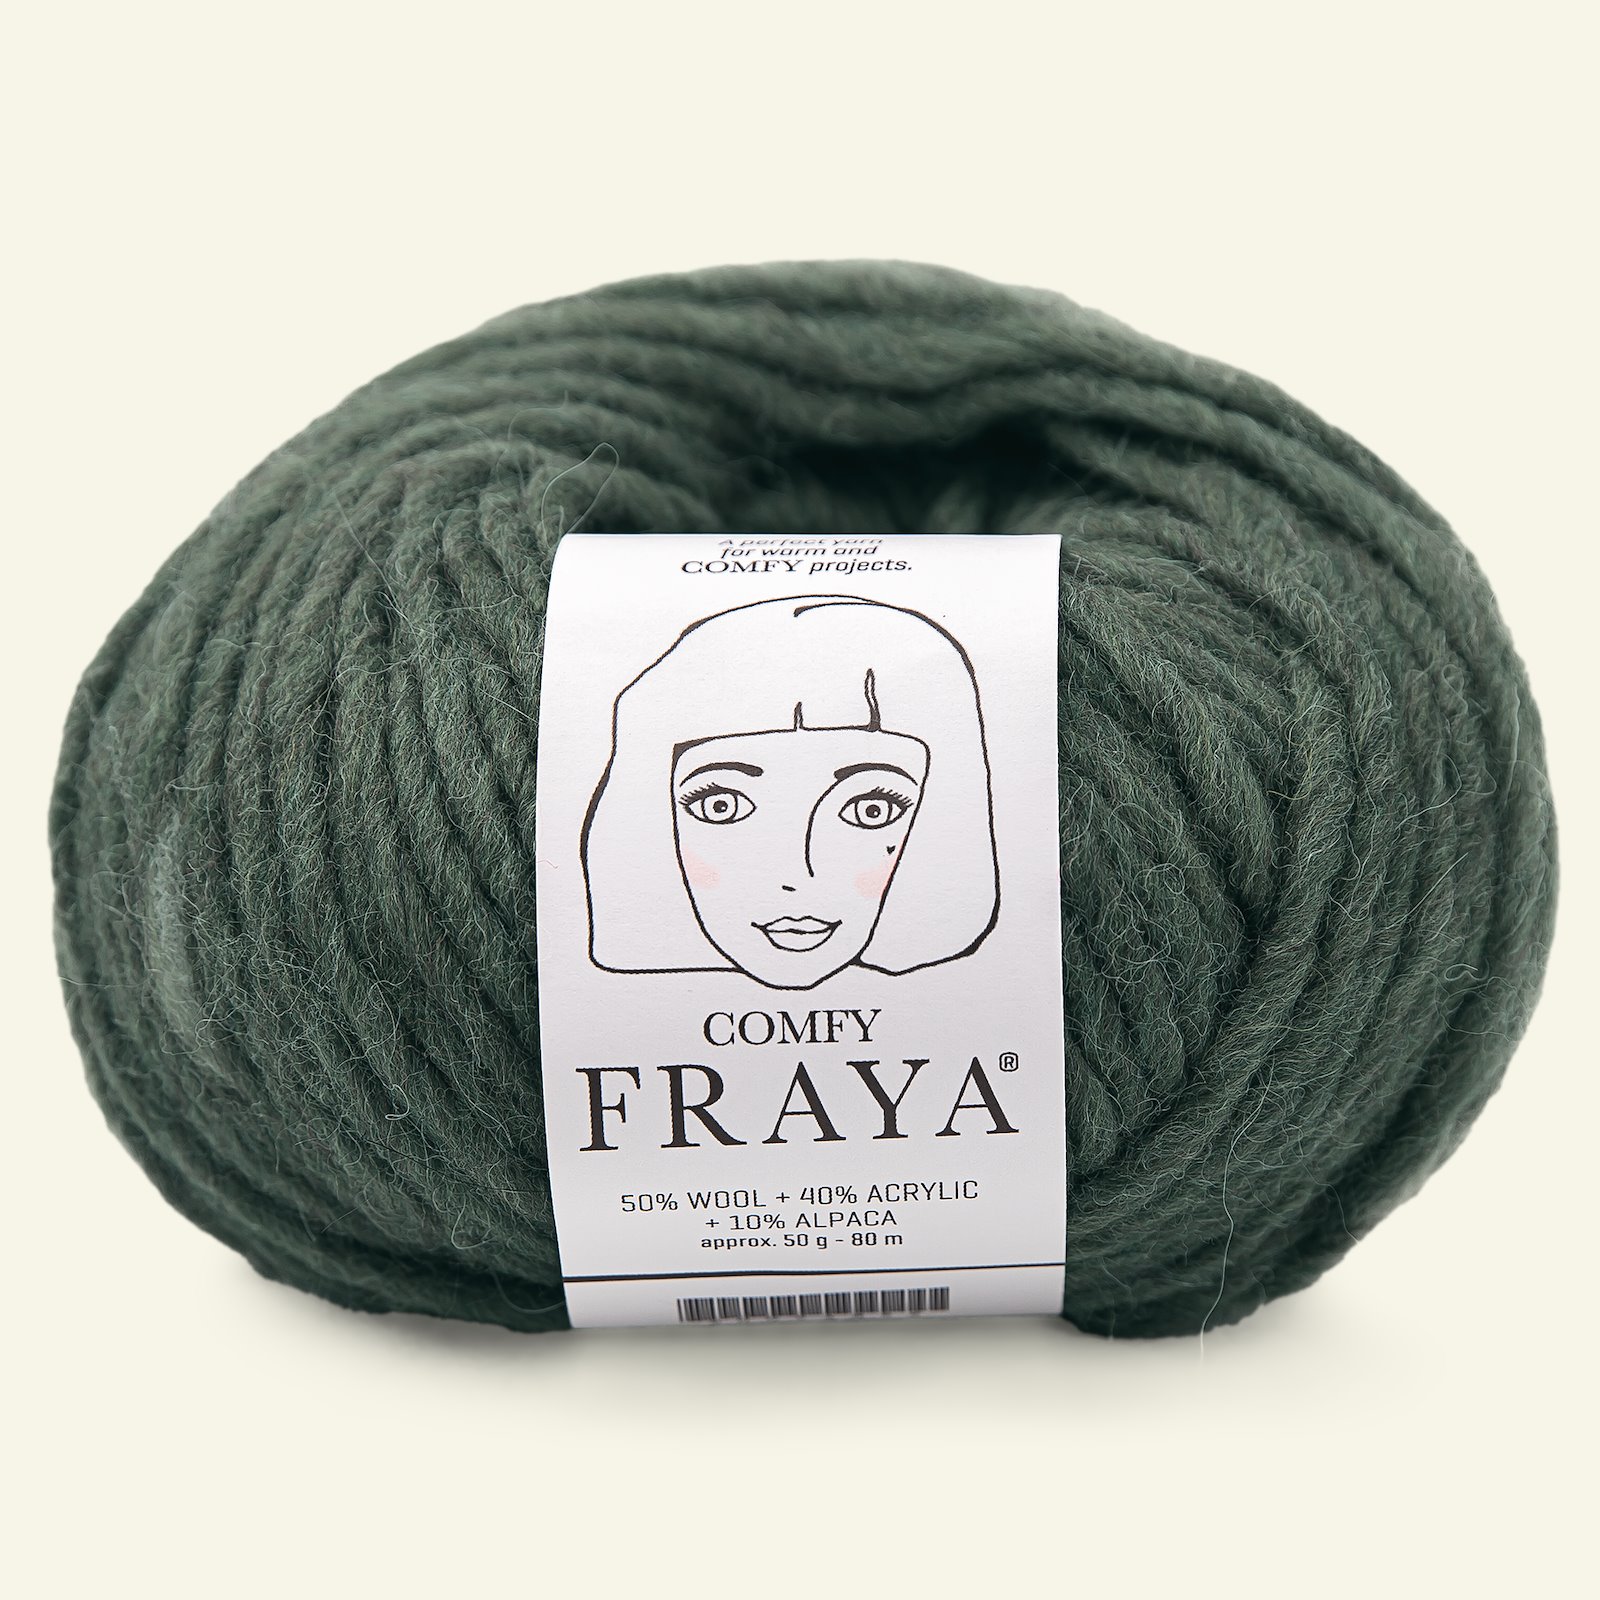 FRAYA, mixed yarn "Comfy", grey green 90000948_pack